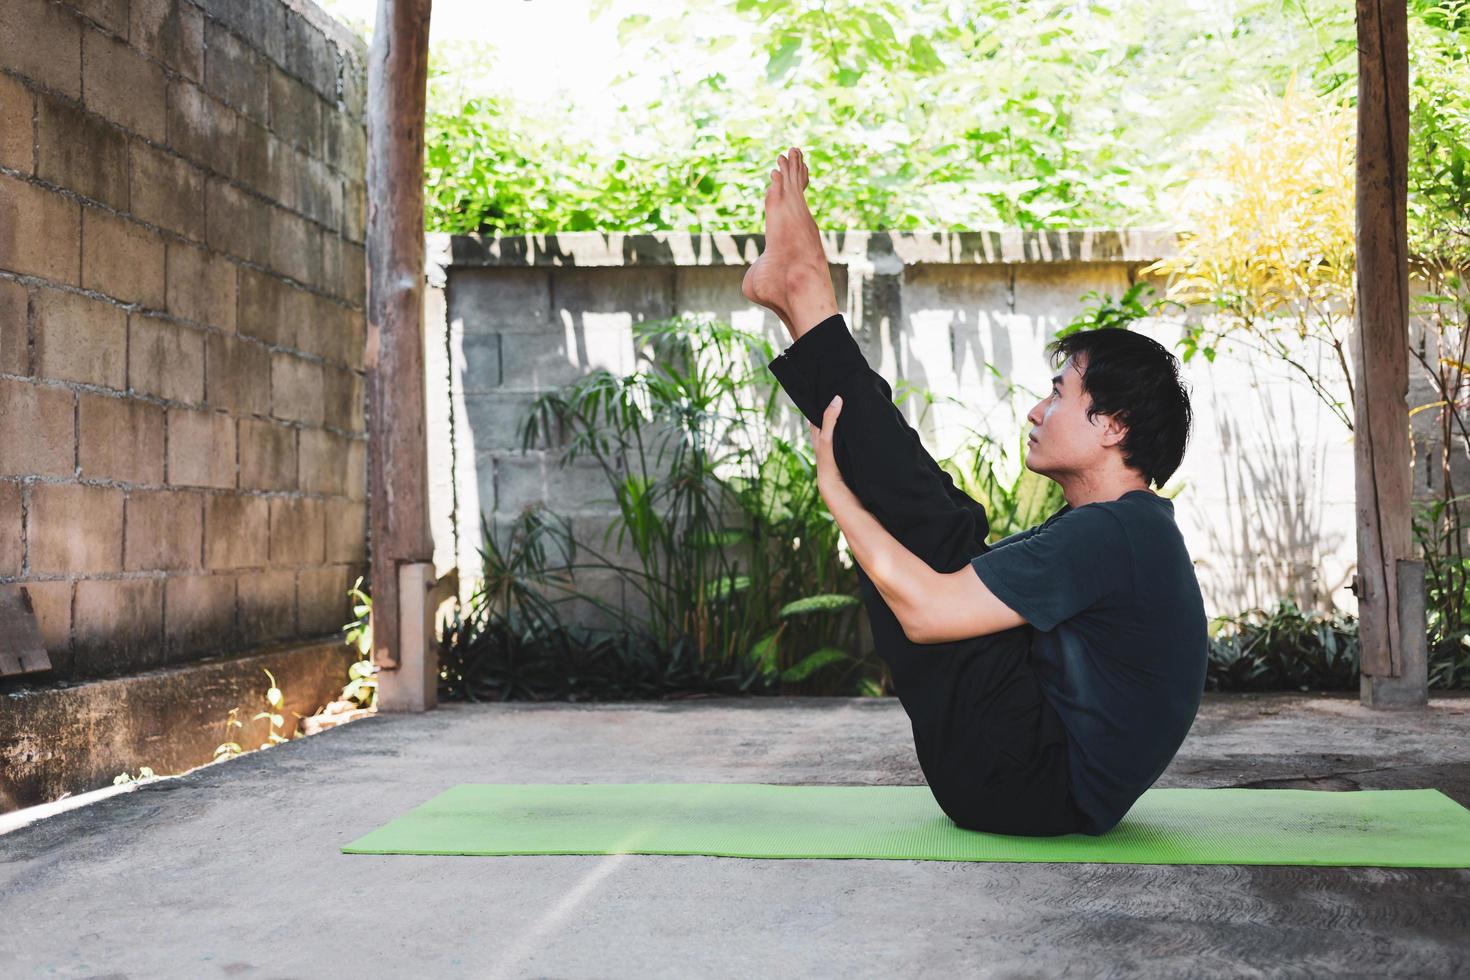 conceito de vida saudável de jovem asiático praticando ioga asana paripurna navasana pose ou pose de barco completo, malha e posa em um tapete de ioga verde. exercício ao ar livre no jardim. estilo de vida saudável. foto